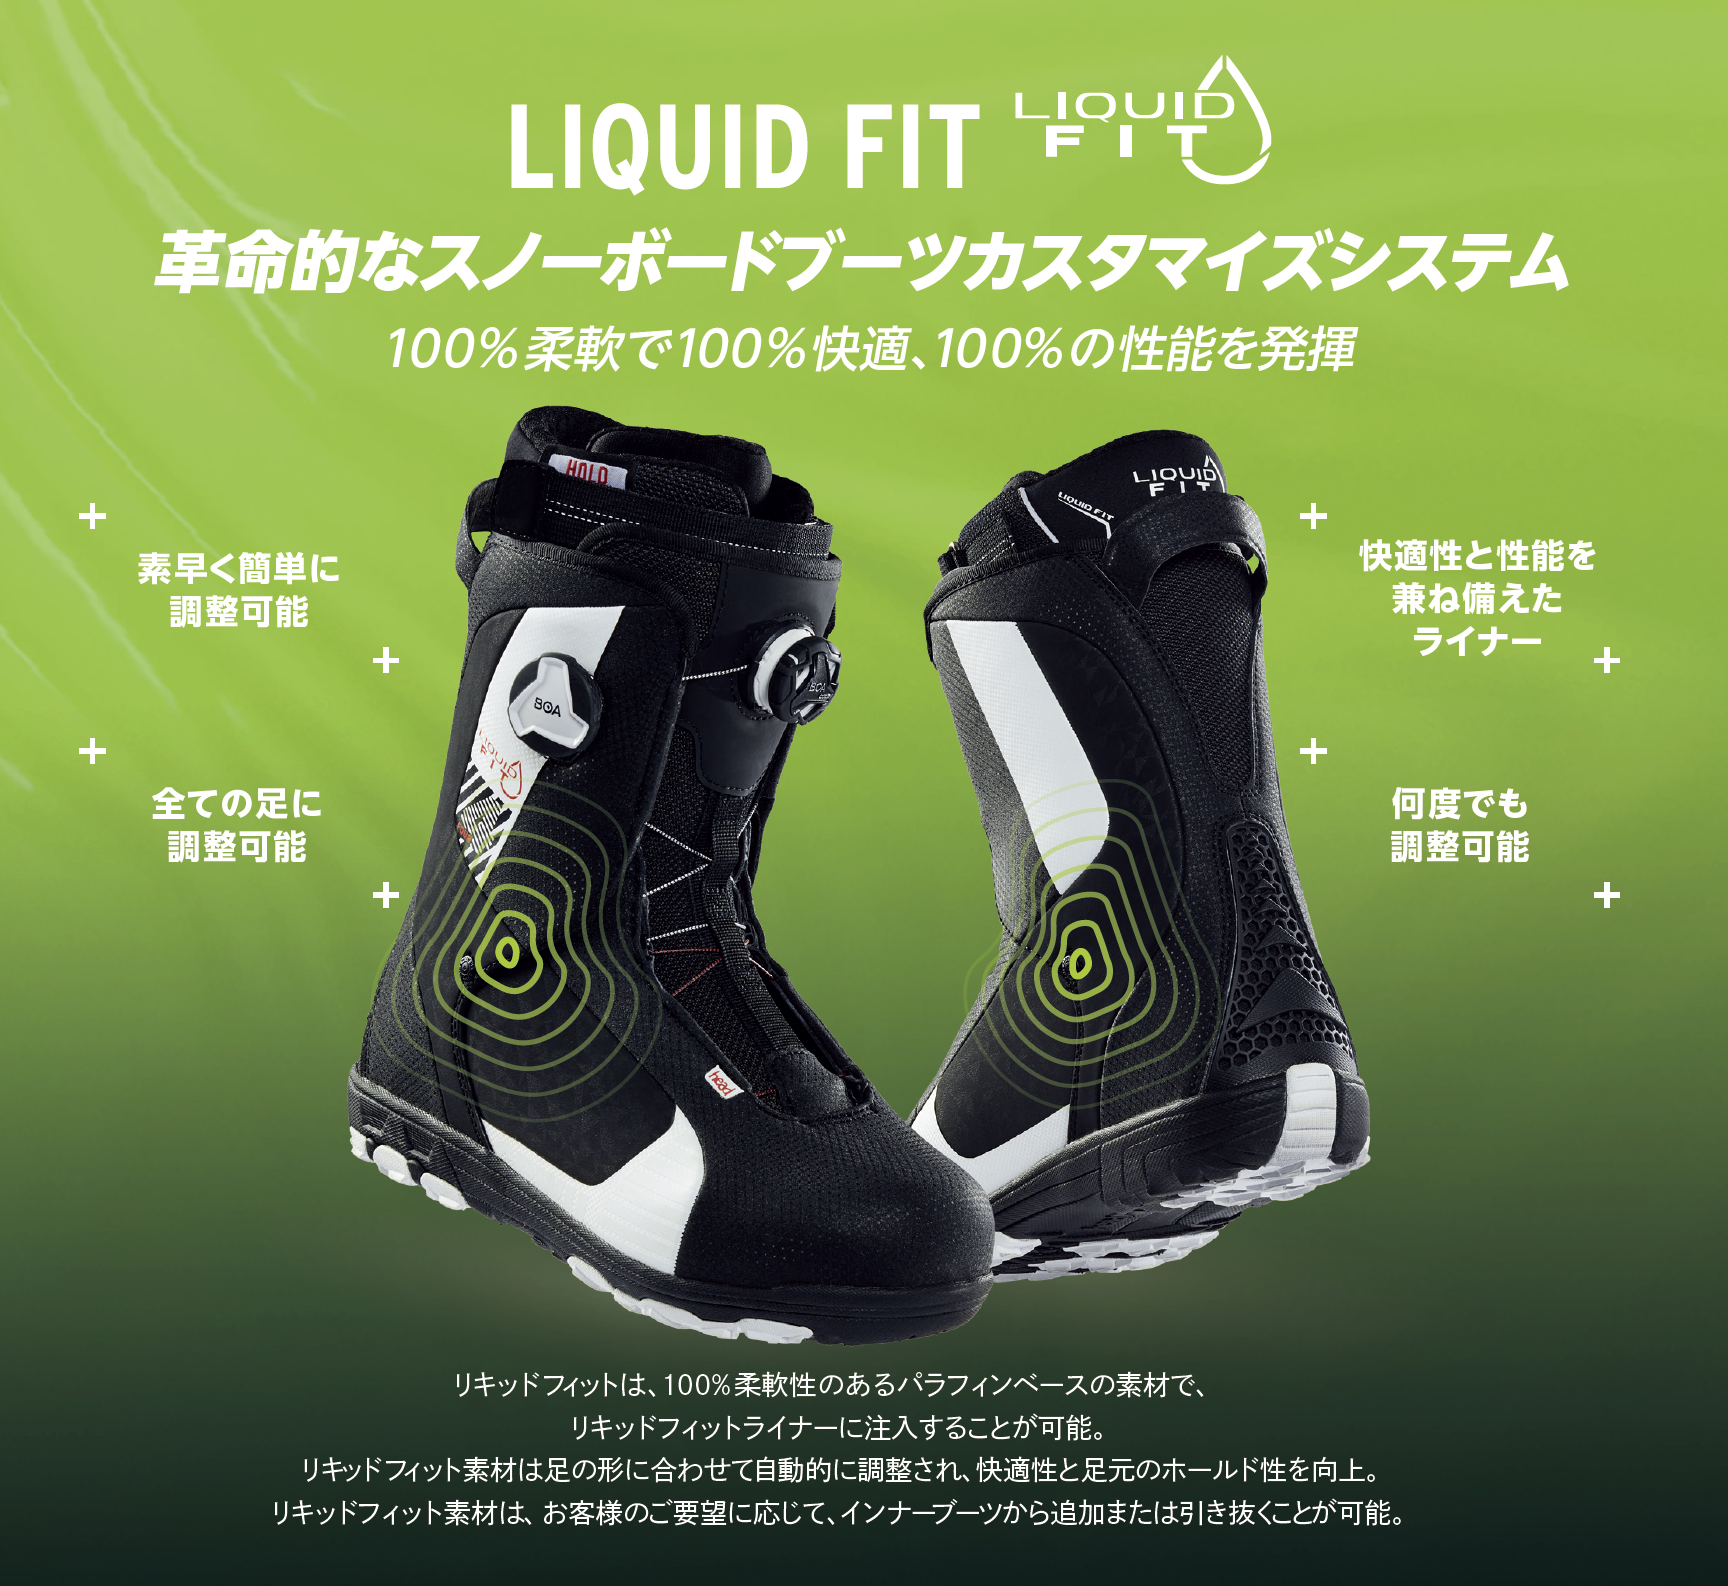 これまで以上にブーツのフィット感がアップ！ Liquid Fit テクノロジー 